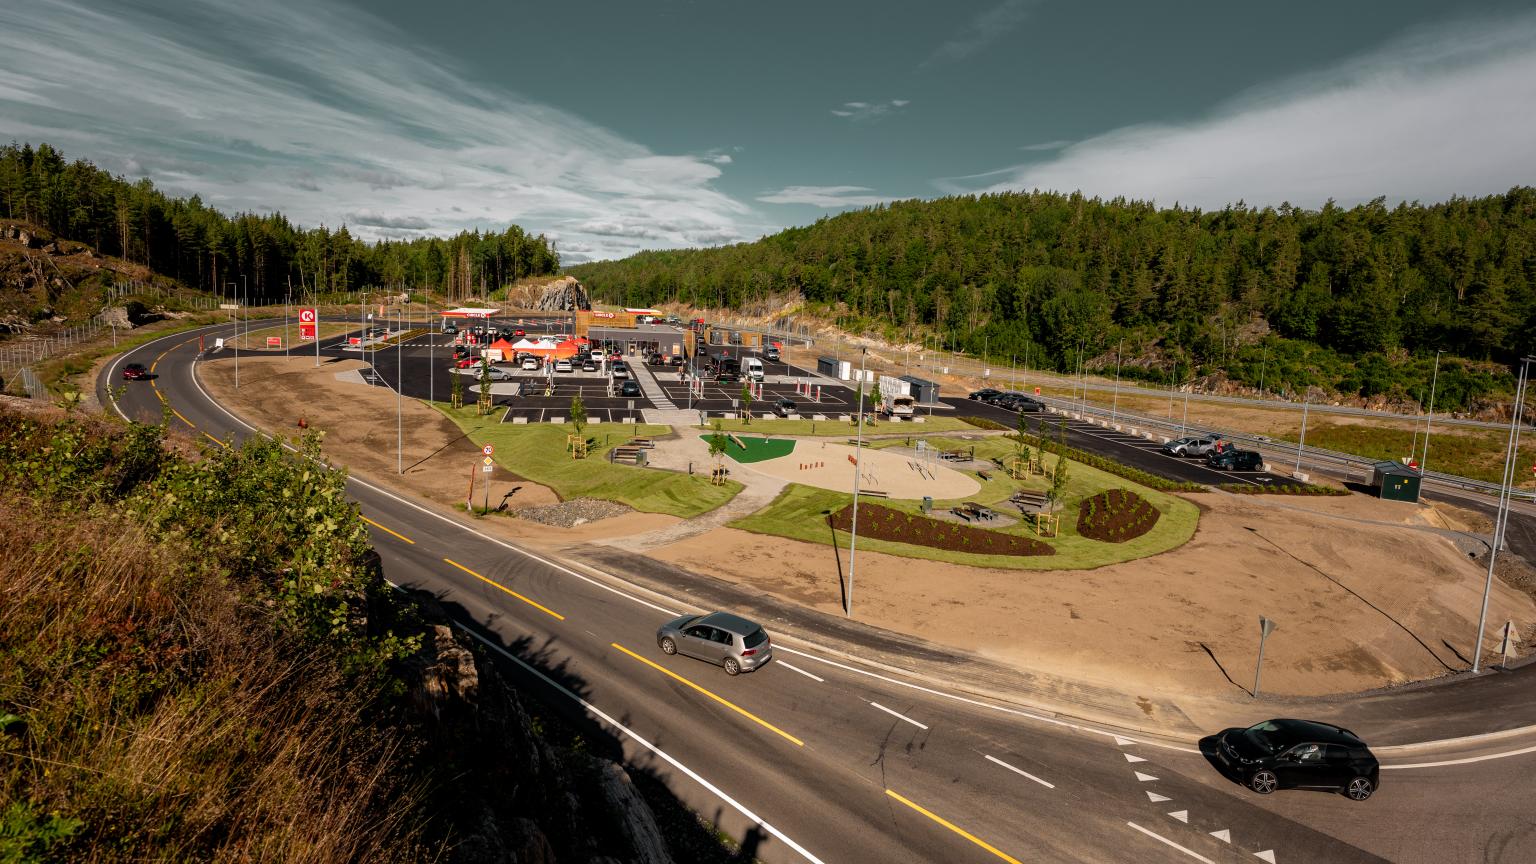 Автозаправочный комплекс Circle K E18 Bamble – полноценный придорожный сервис в Норвегии